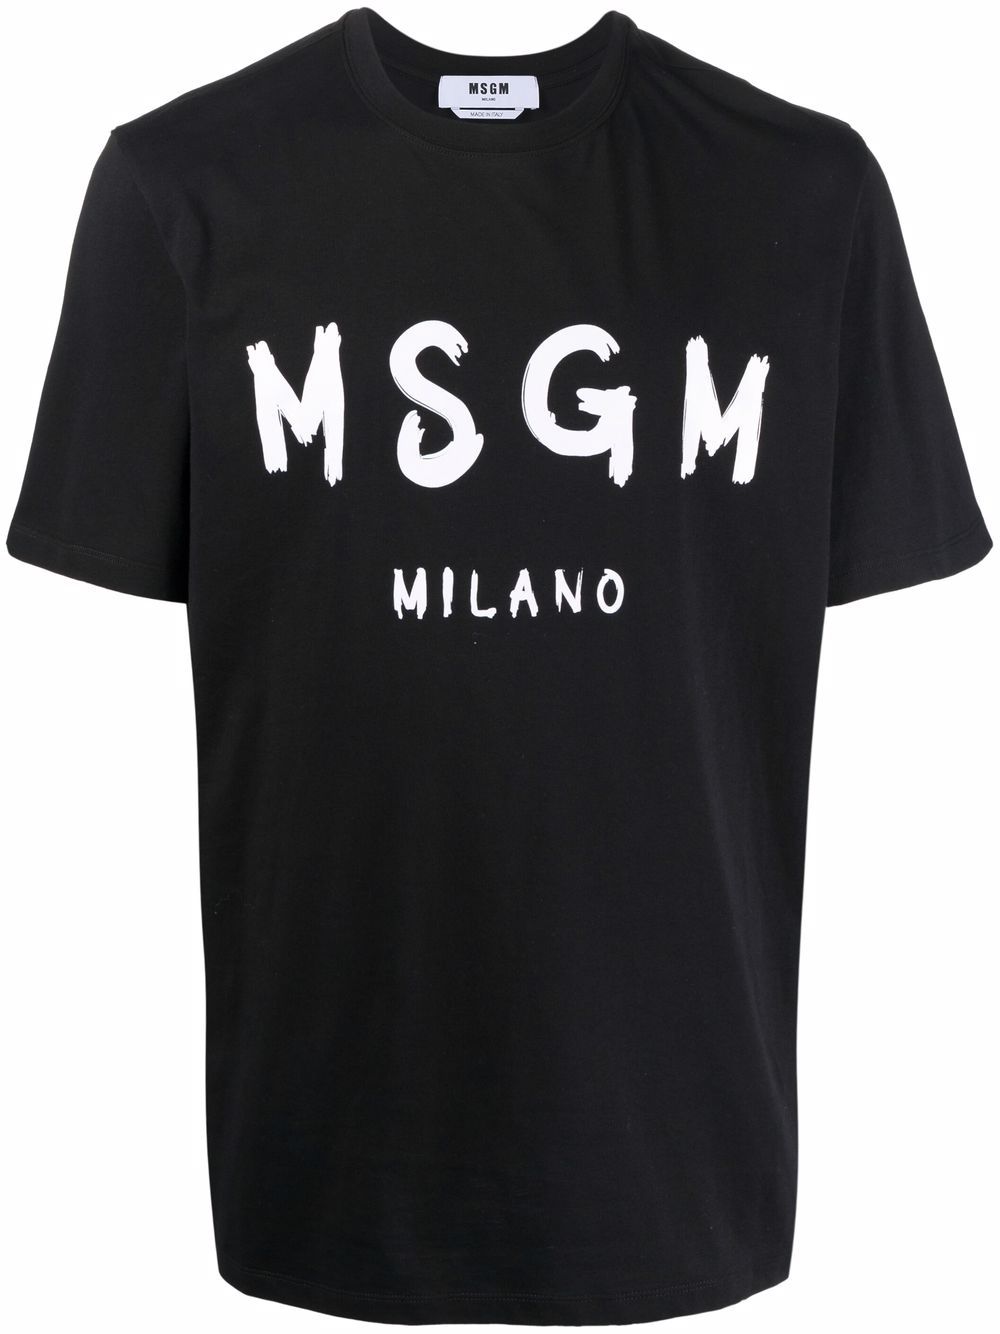 T-shirt in cotone bianco/nero con stampa logo